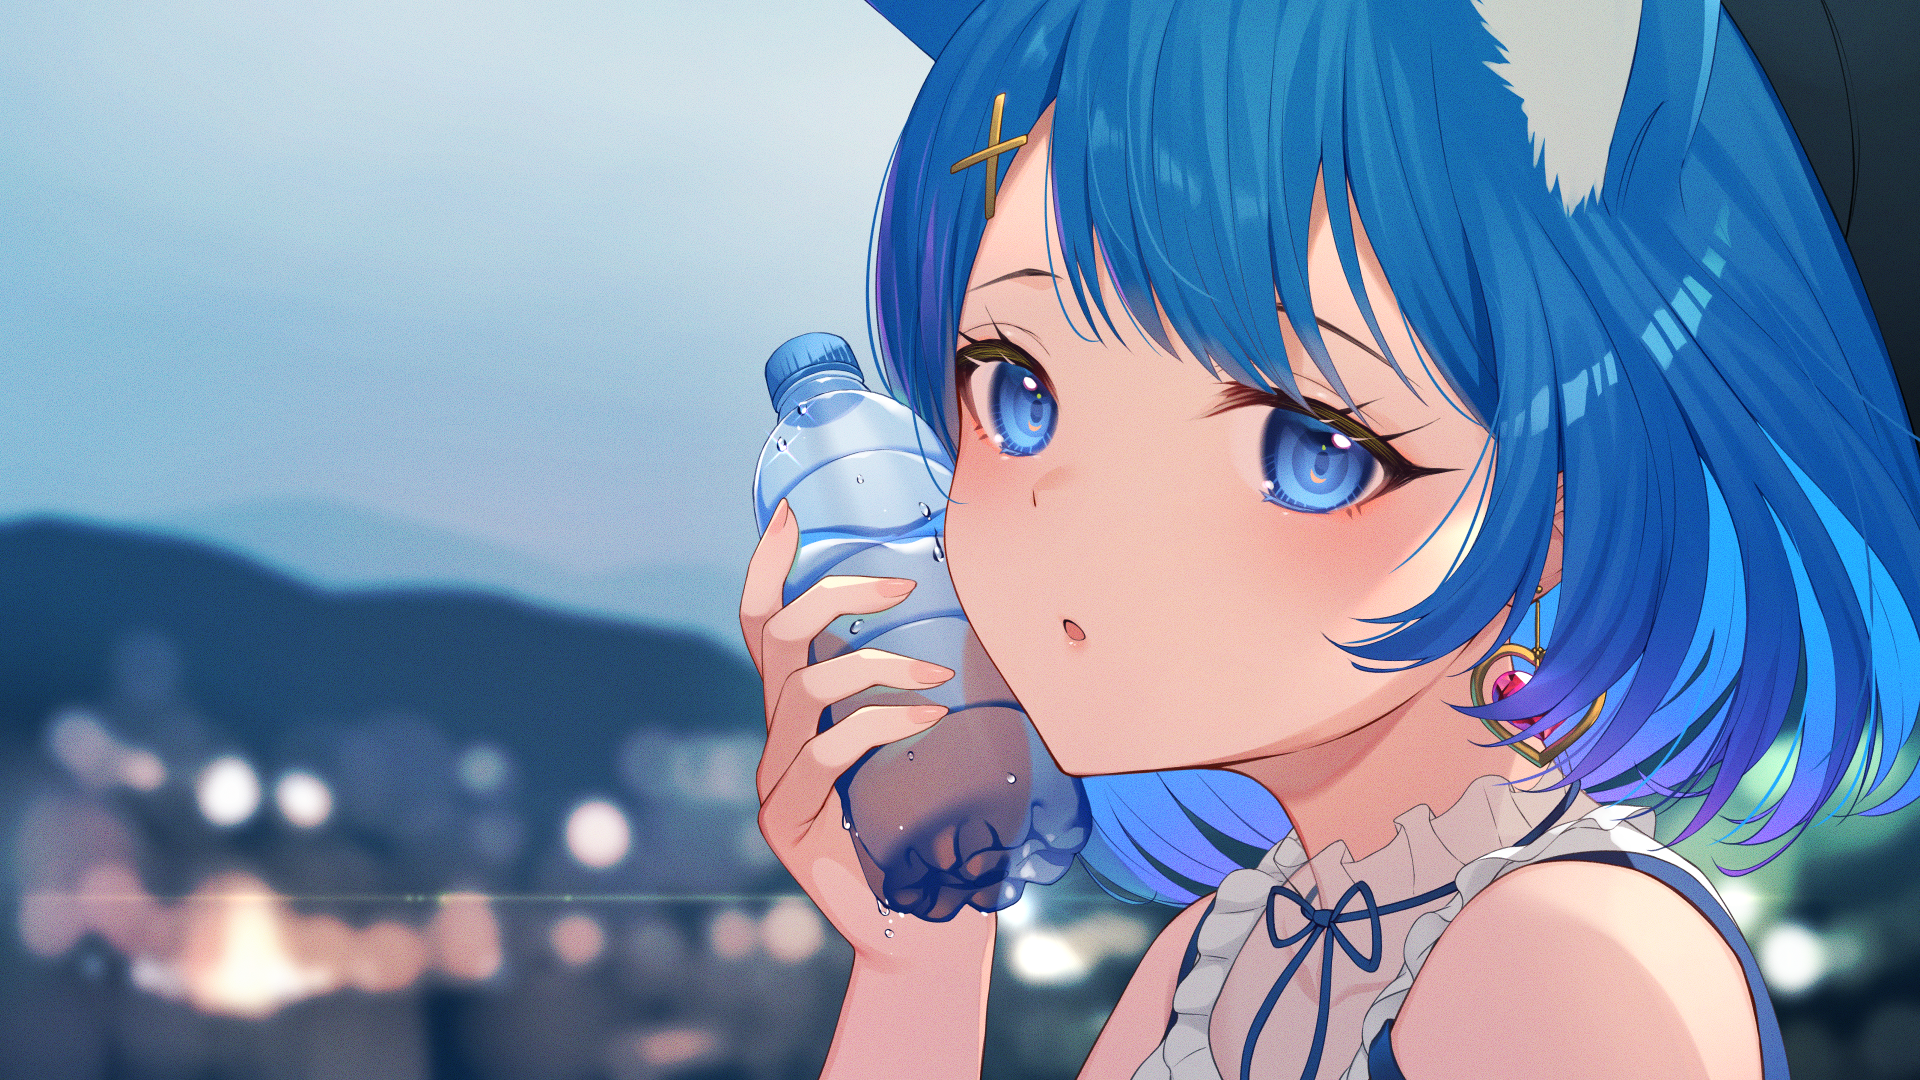 Anime 1920x1080 blue hair blue eyes water bottle anime girls cat girl cat ears